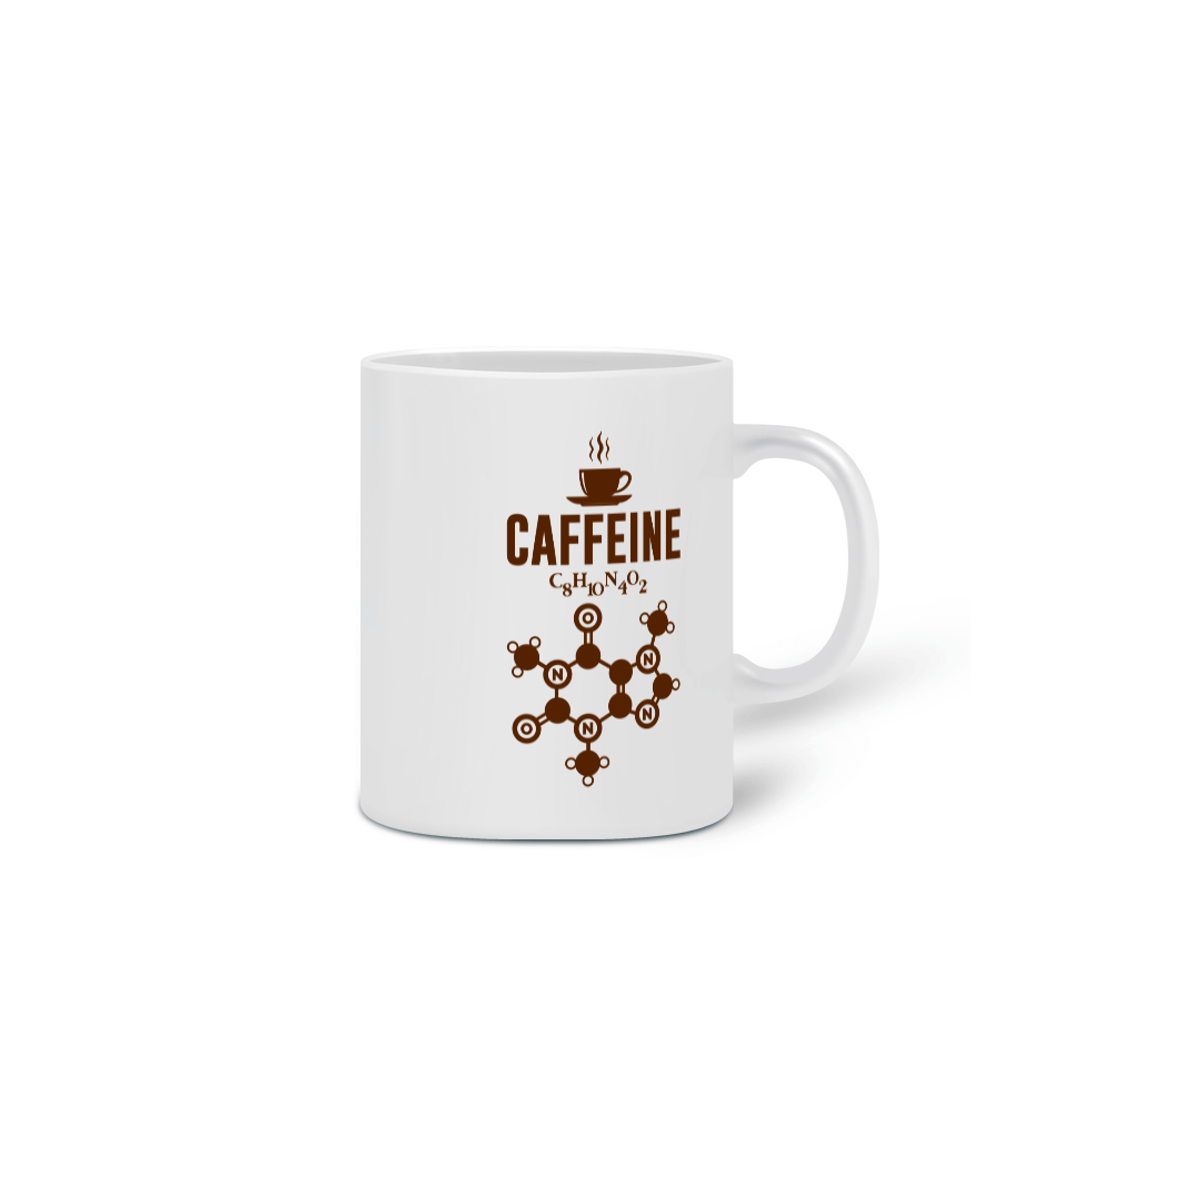 Nome do produto: CAFFEINE [CANECA]